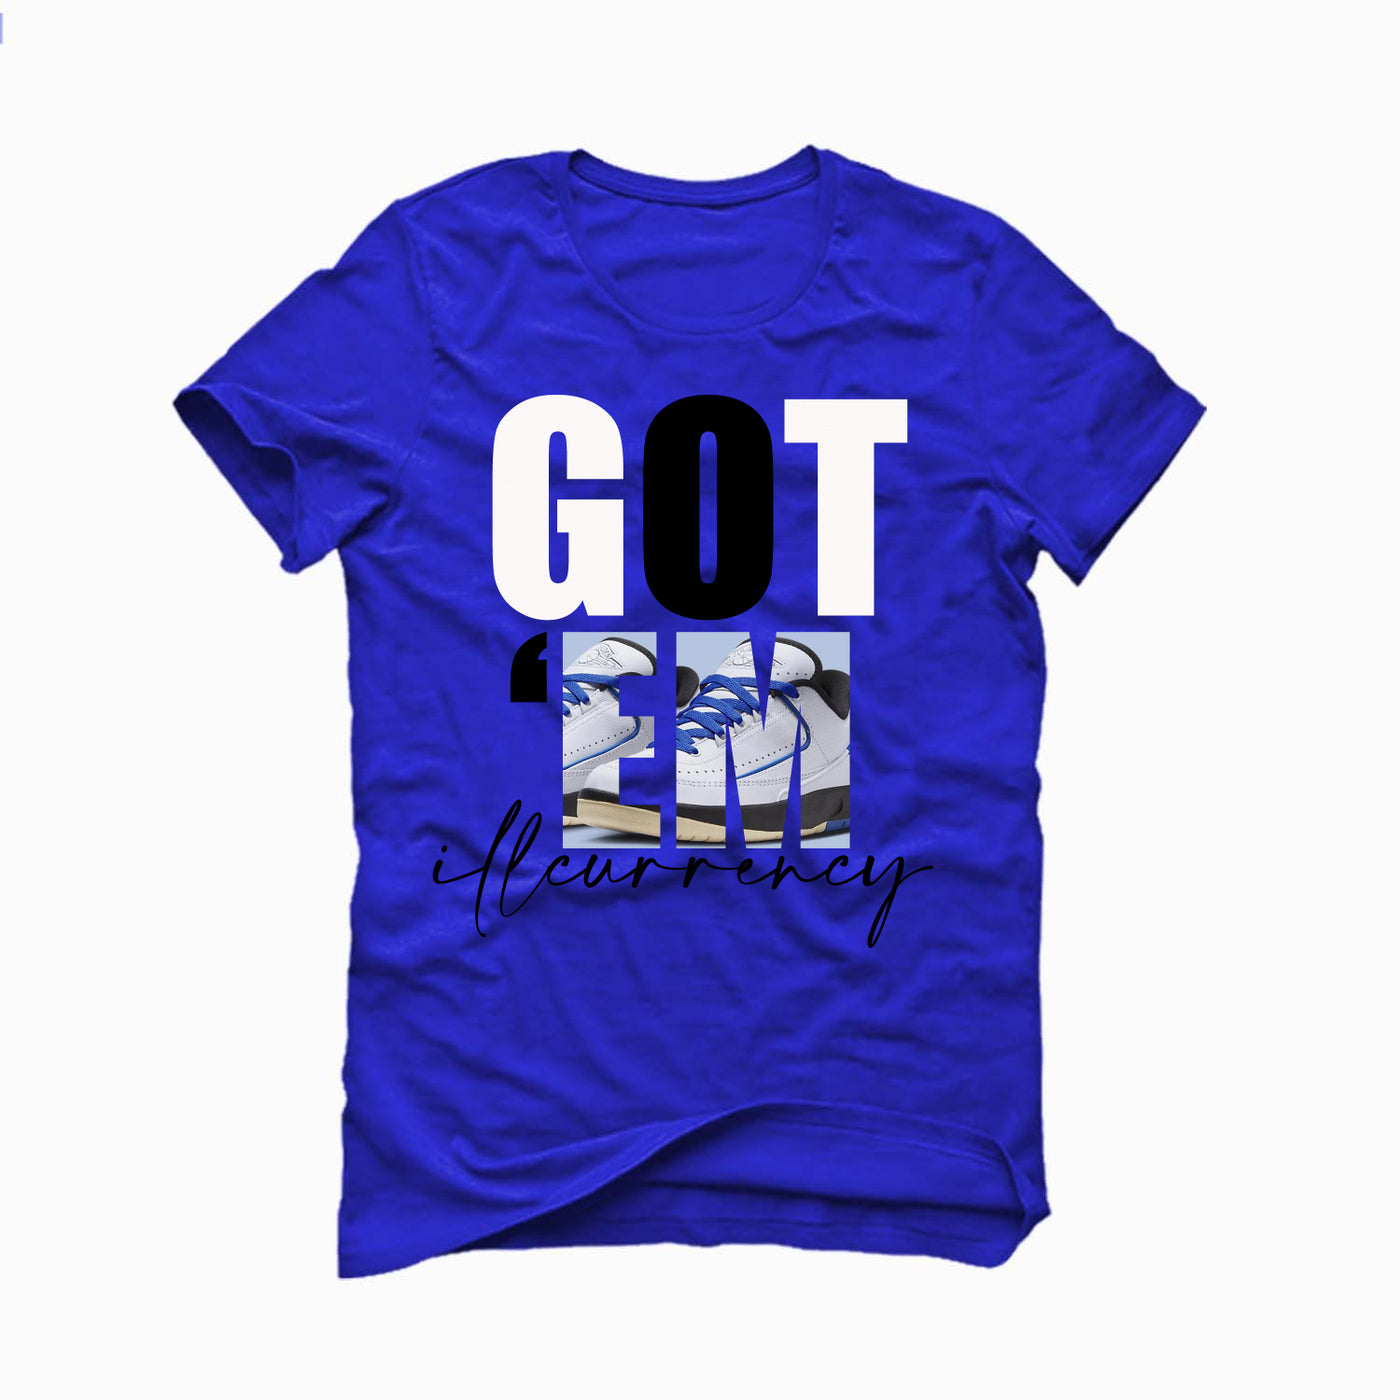 AIR JORDAN 2 LOW “VARSITY ROYAL” Royal Blue T-Shirt (Got Em)